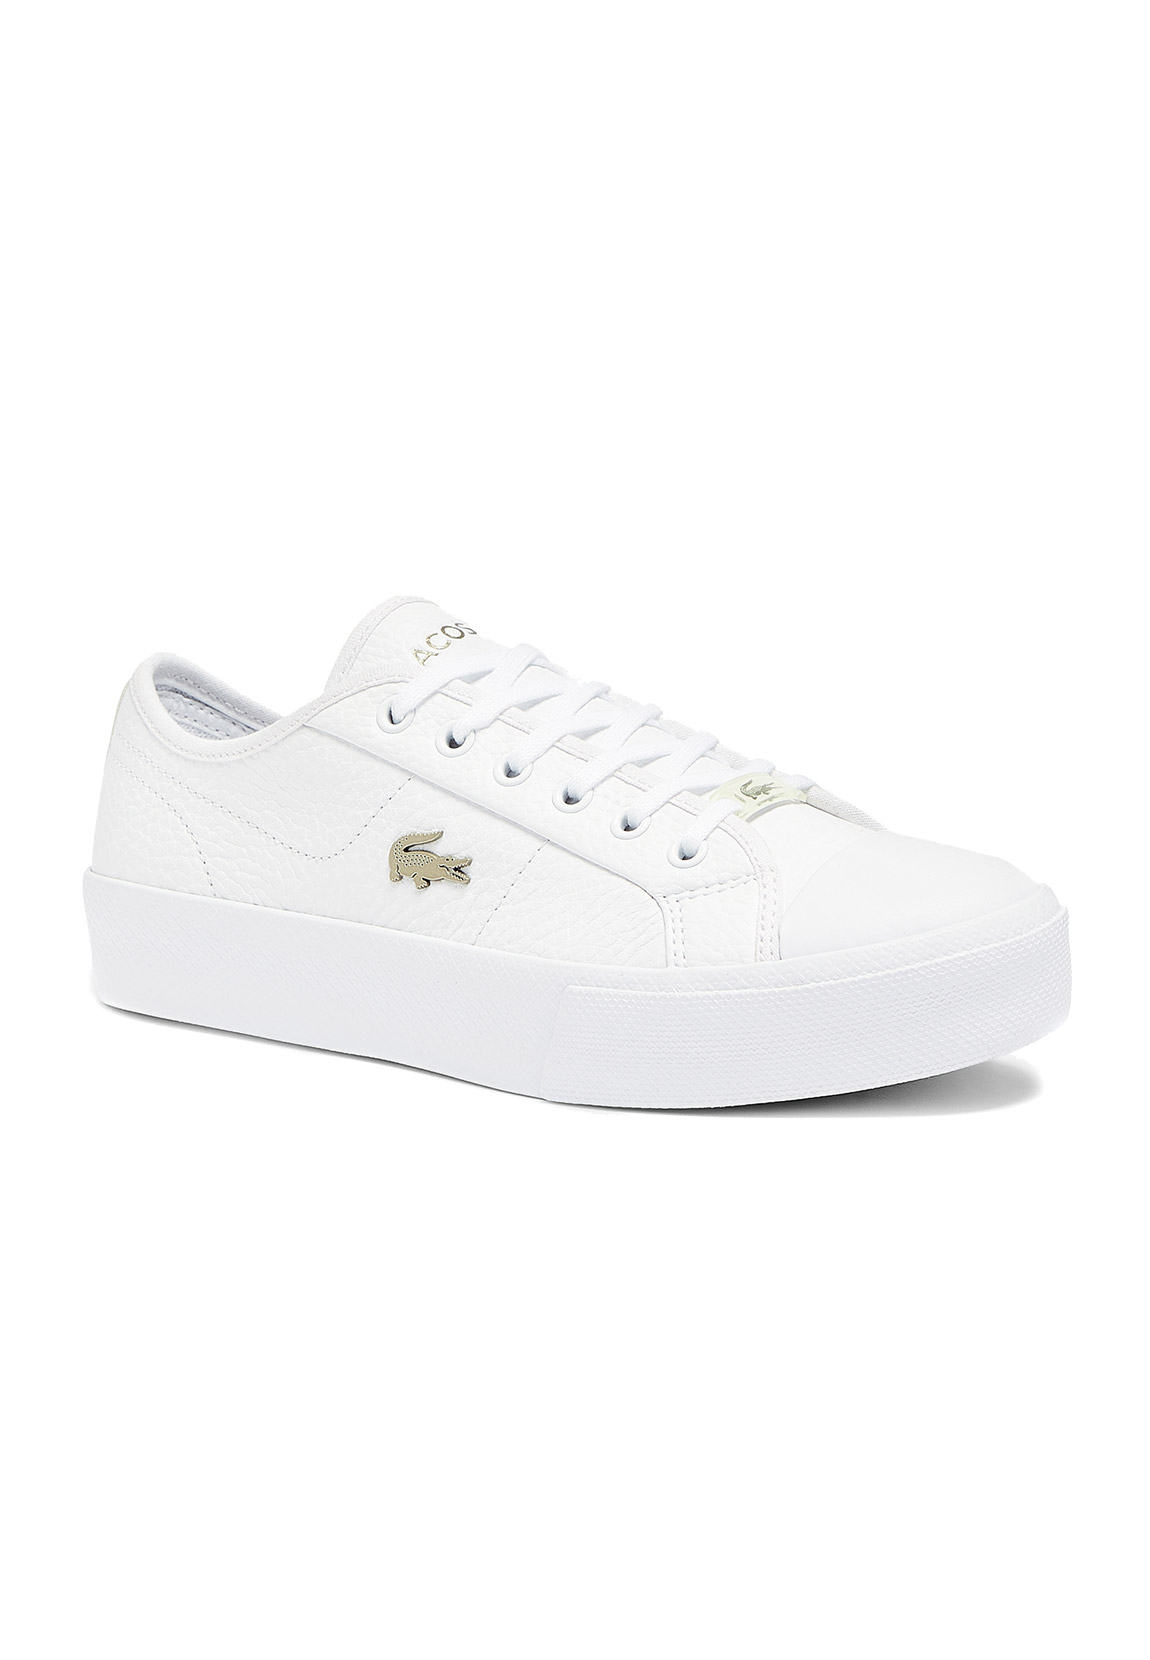 Lacoste – Ziane Grand – Flache Sneaker in Weiß mit goldfarbenem Aufnäher günstig online kaufen